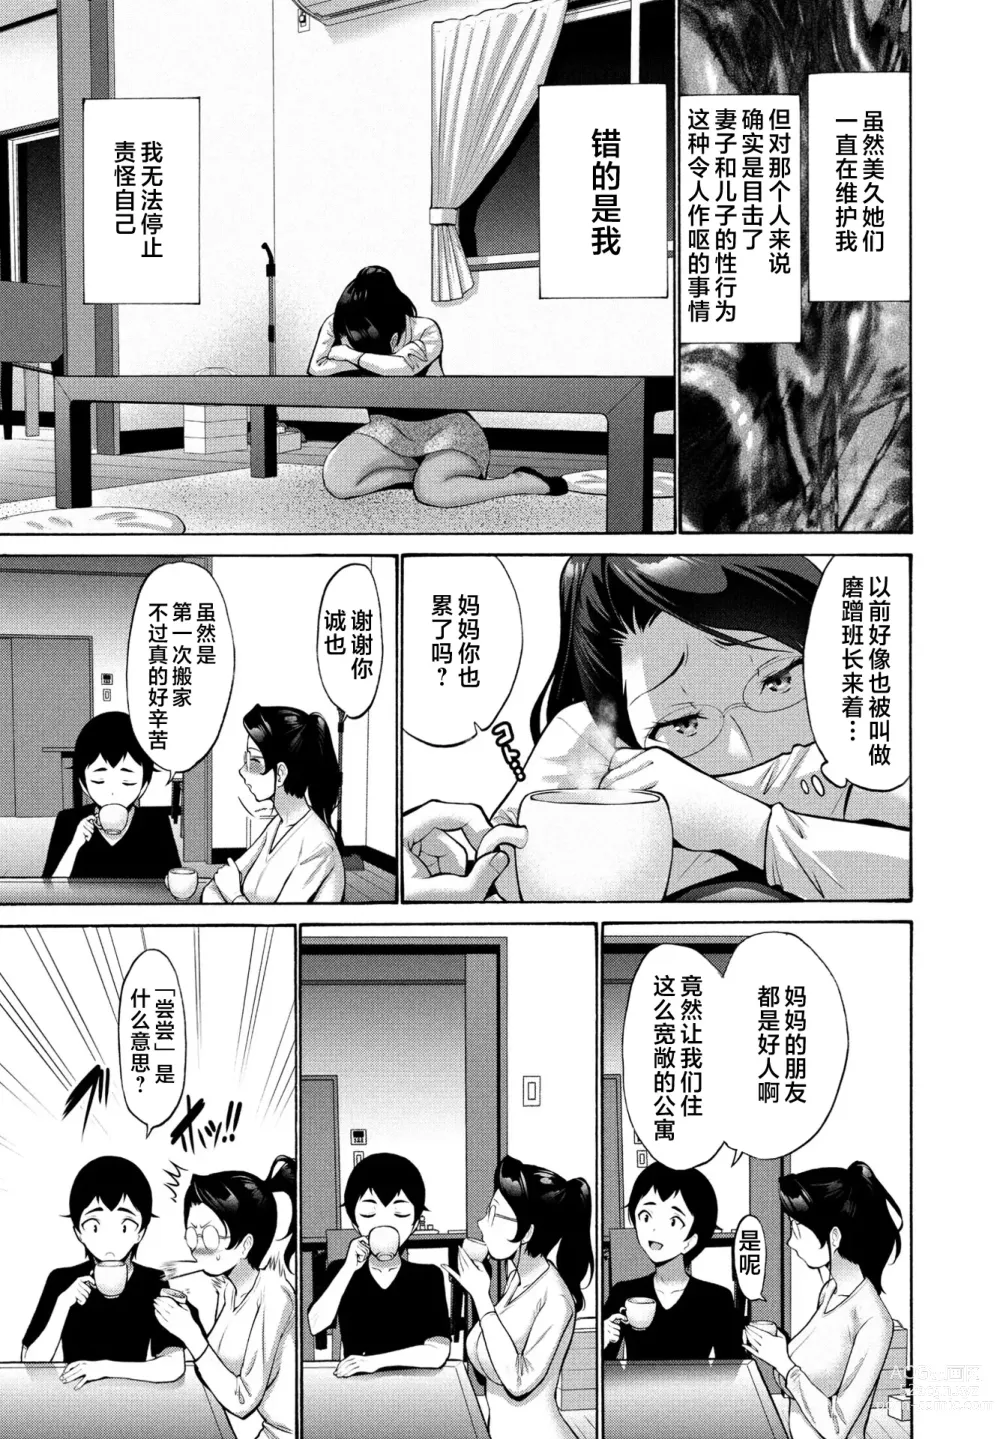 Page 23 of manga Hamayuri Club Ch. 1-3